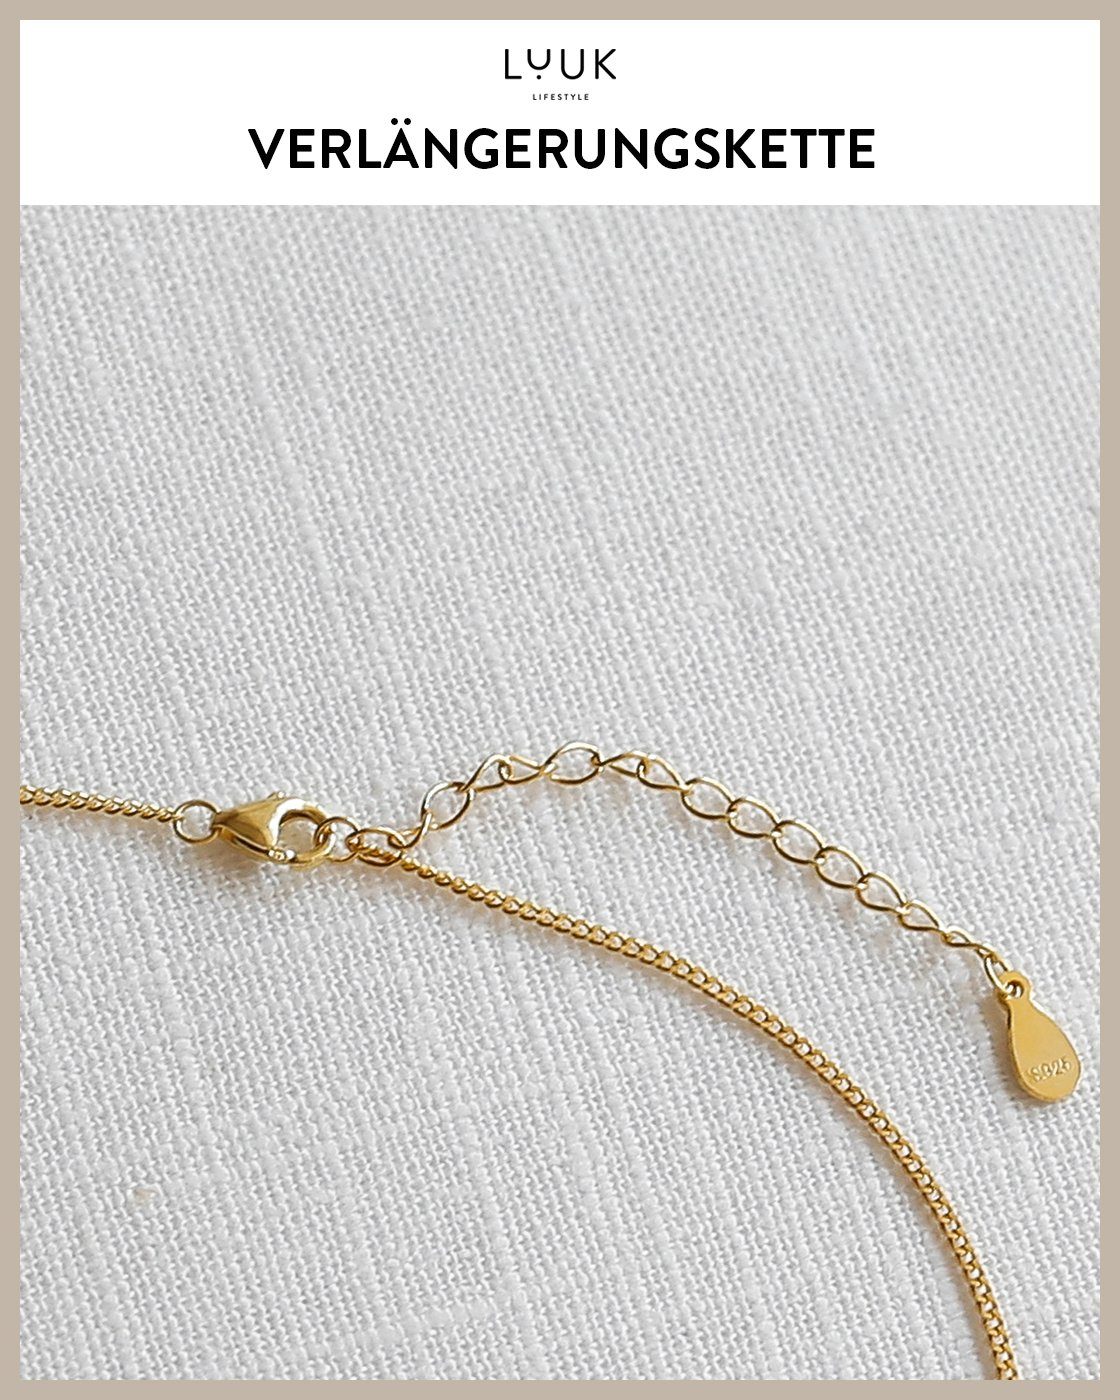 Silberkette LUUK für Gold Geschenkidee Schmuck Seestern, Frauen, LIFESTYLE Mädchen